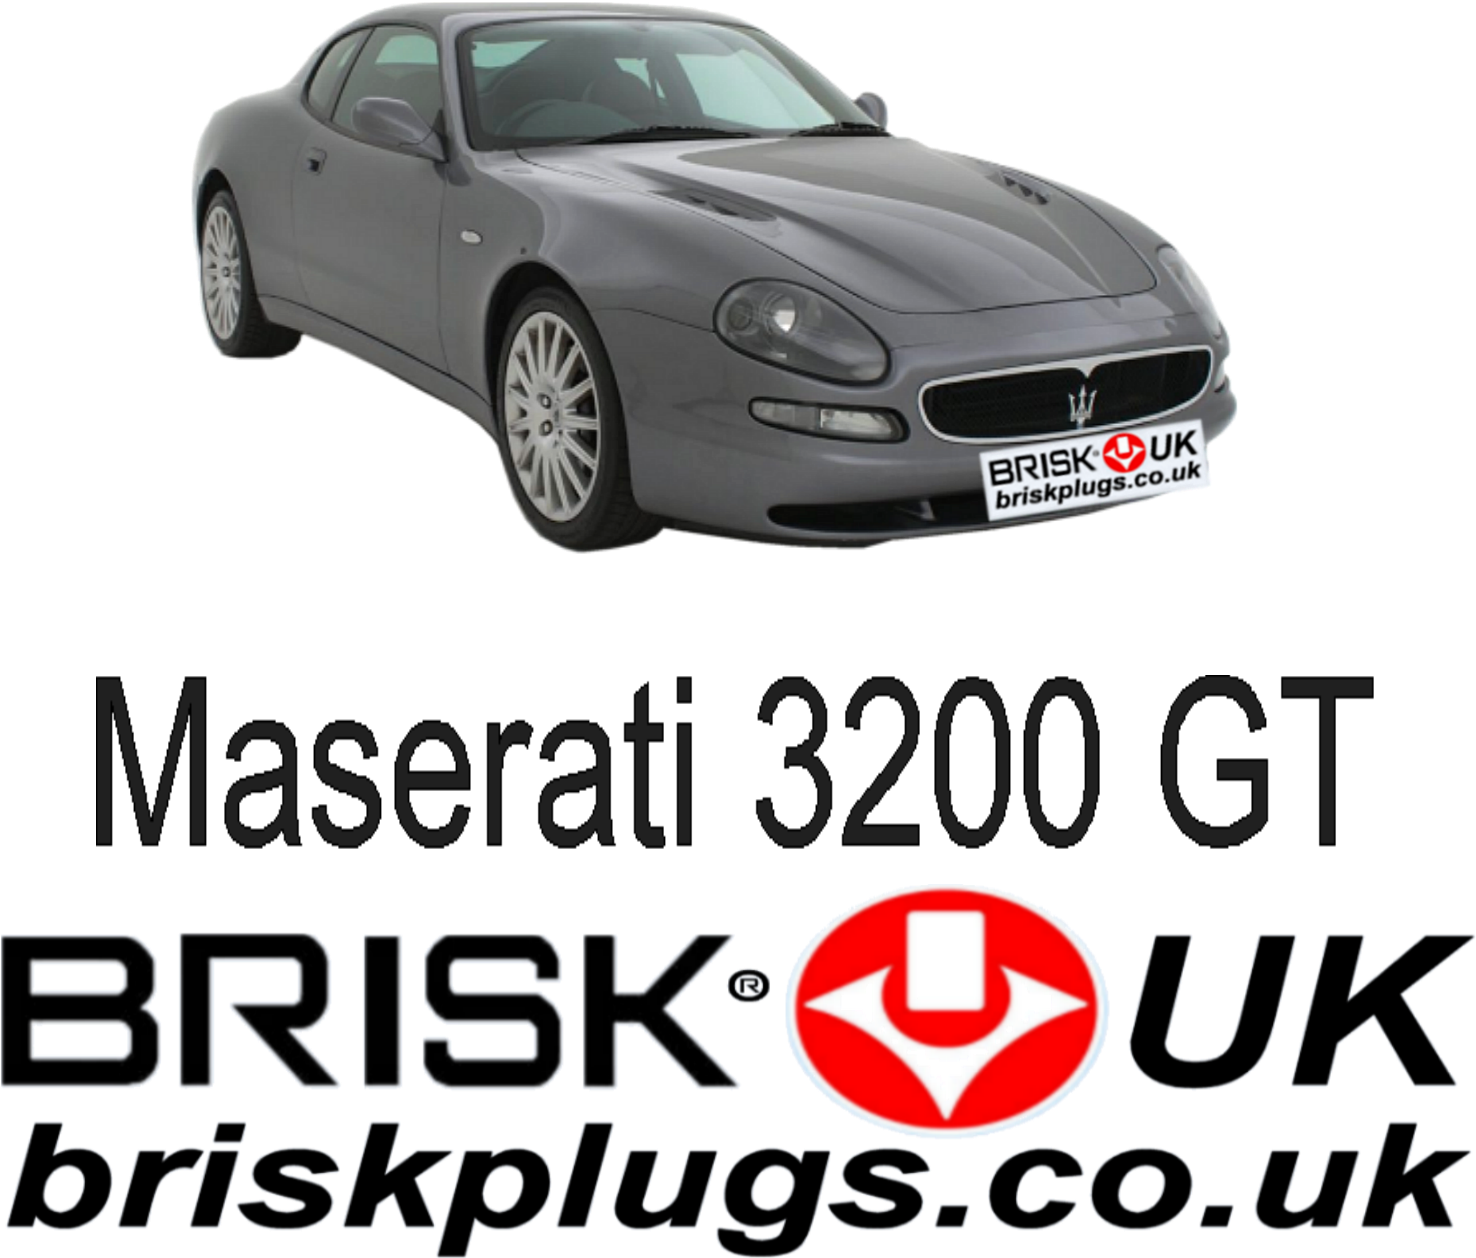 Maserati3200 G T Brisk U K Promotion